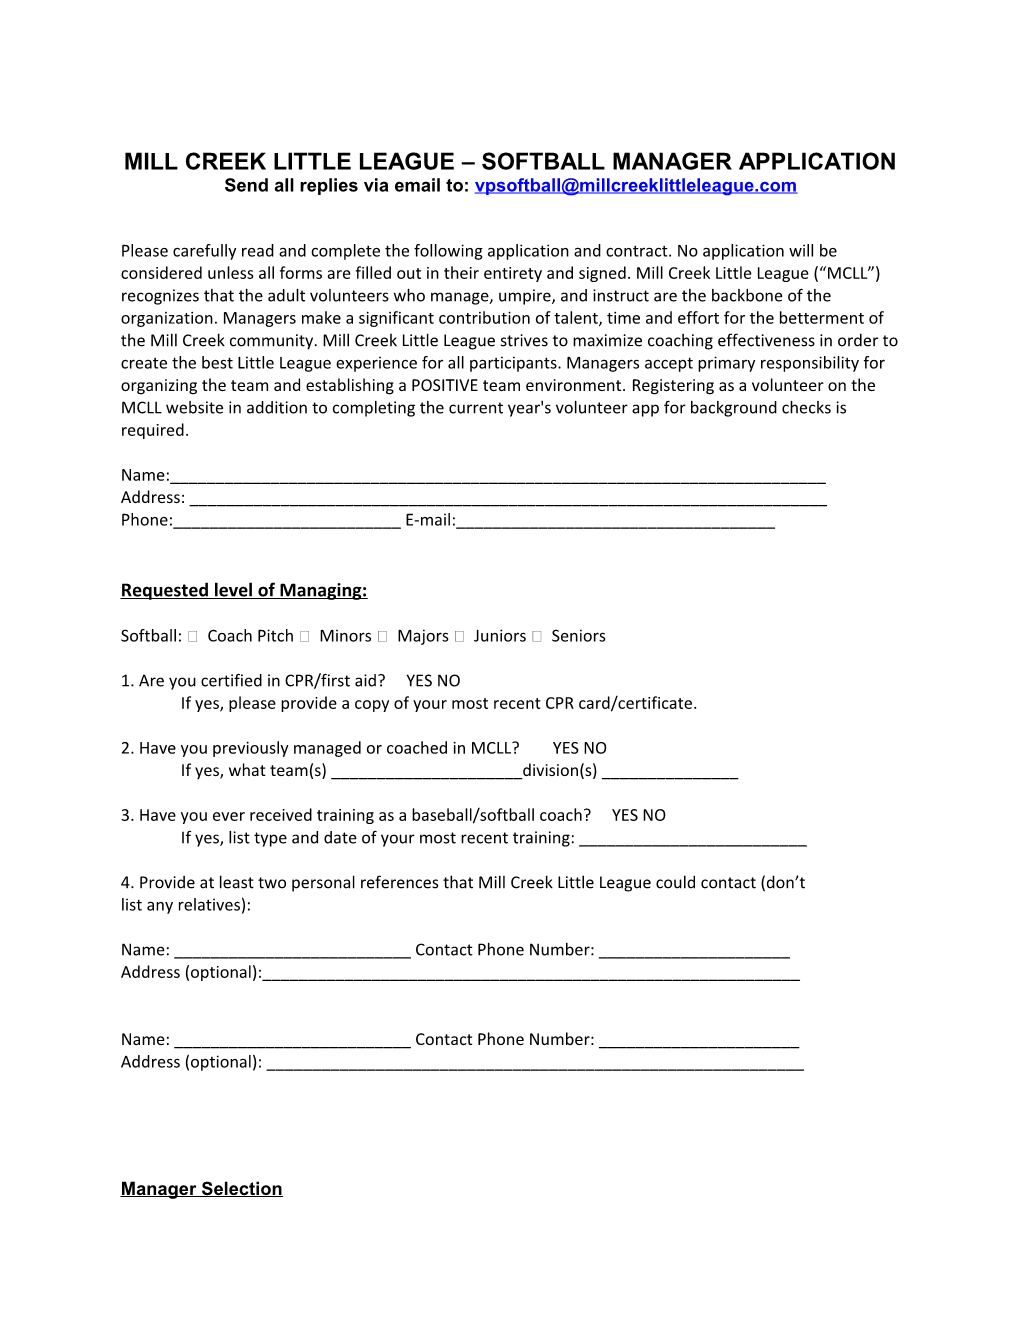 Mill Creek Little League Softball Manager Application